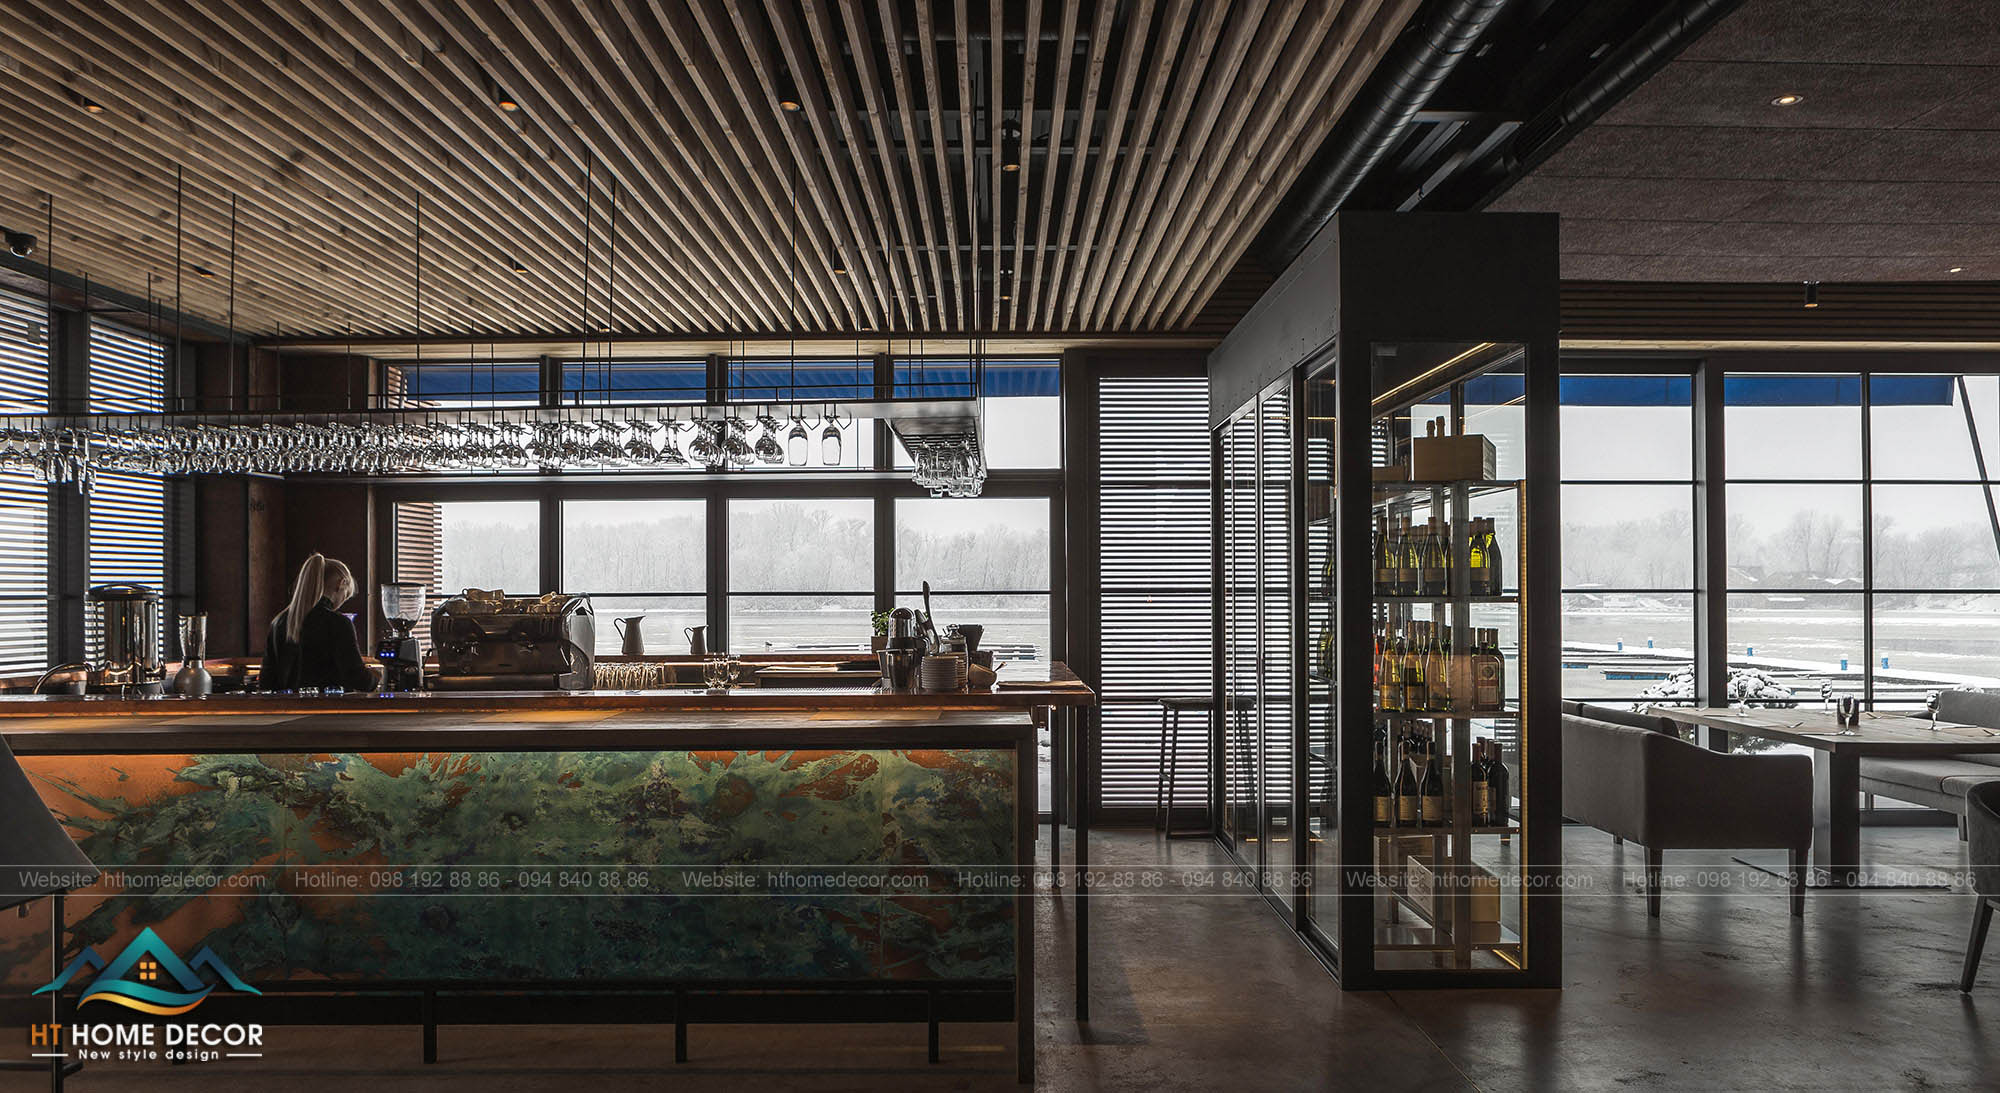 Các tủ rượu và kết hợp với với bể nuôi cá trong không gian nhà hàng này càng làm cho khách hàng không thể không quay lại lần tới.